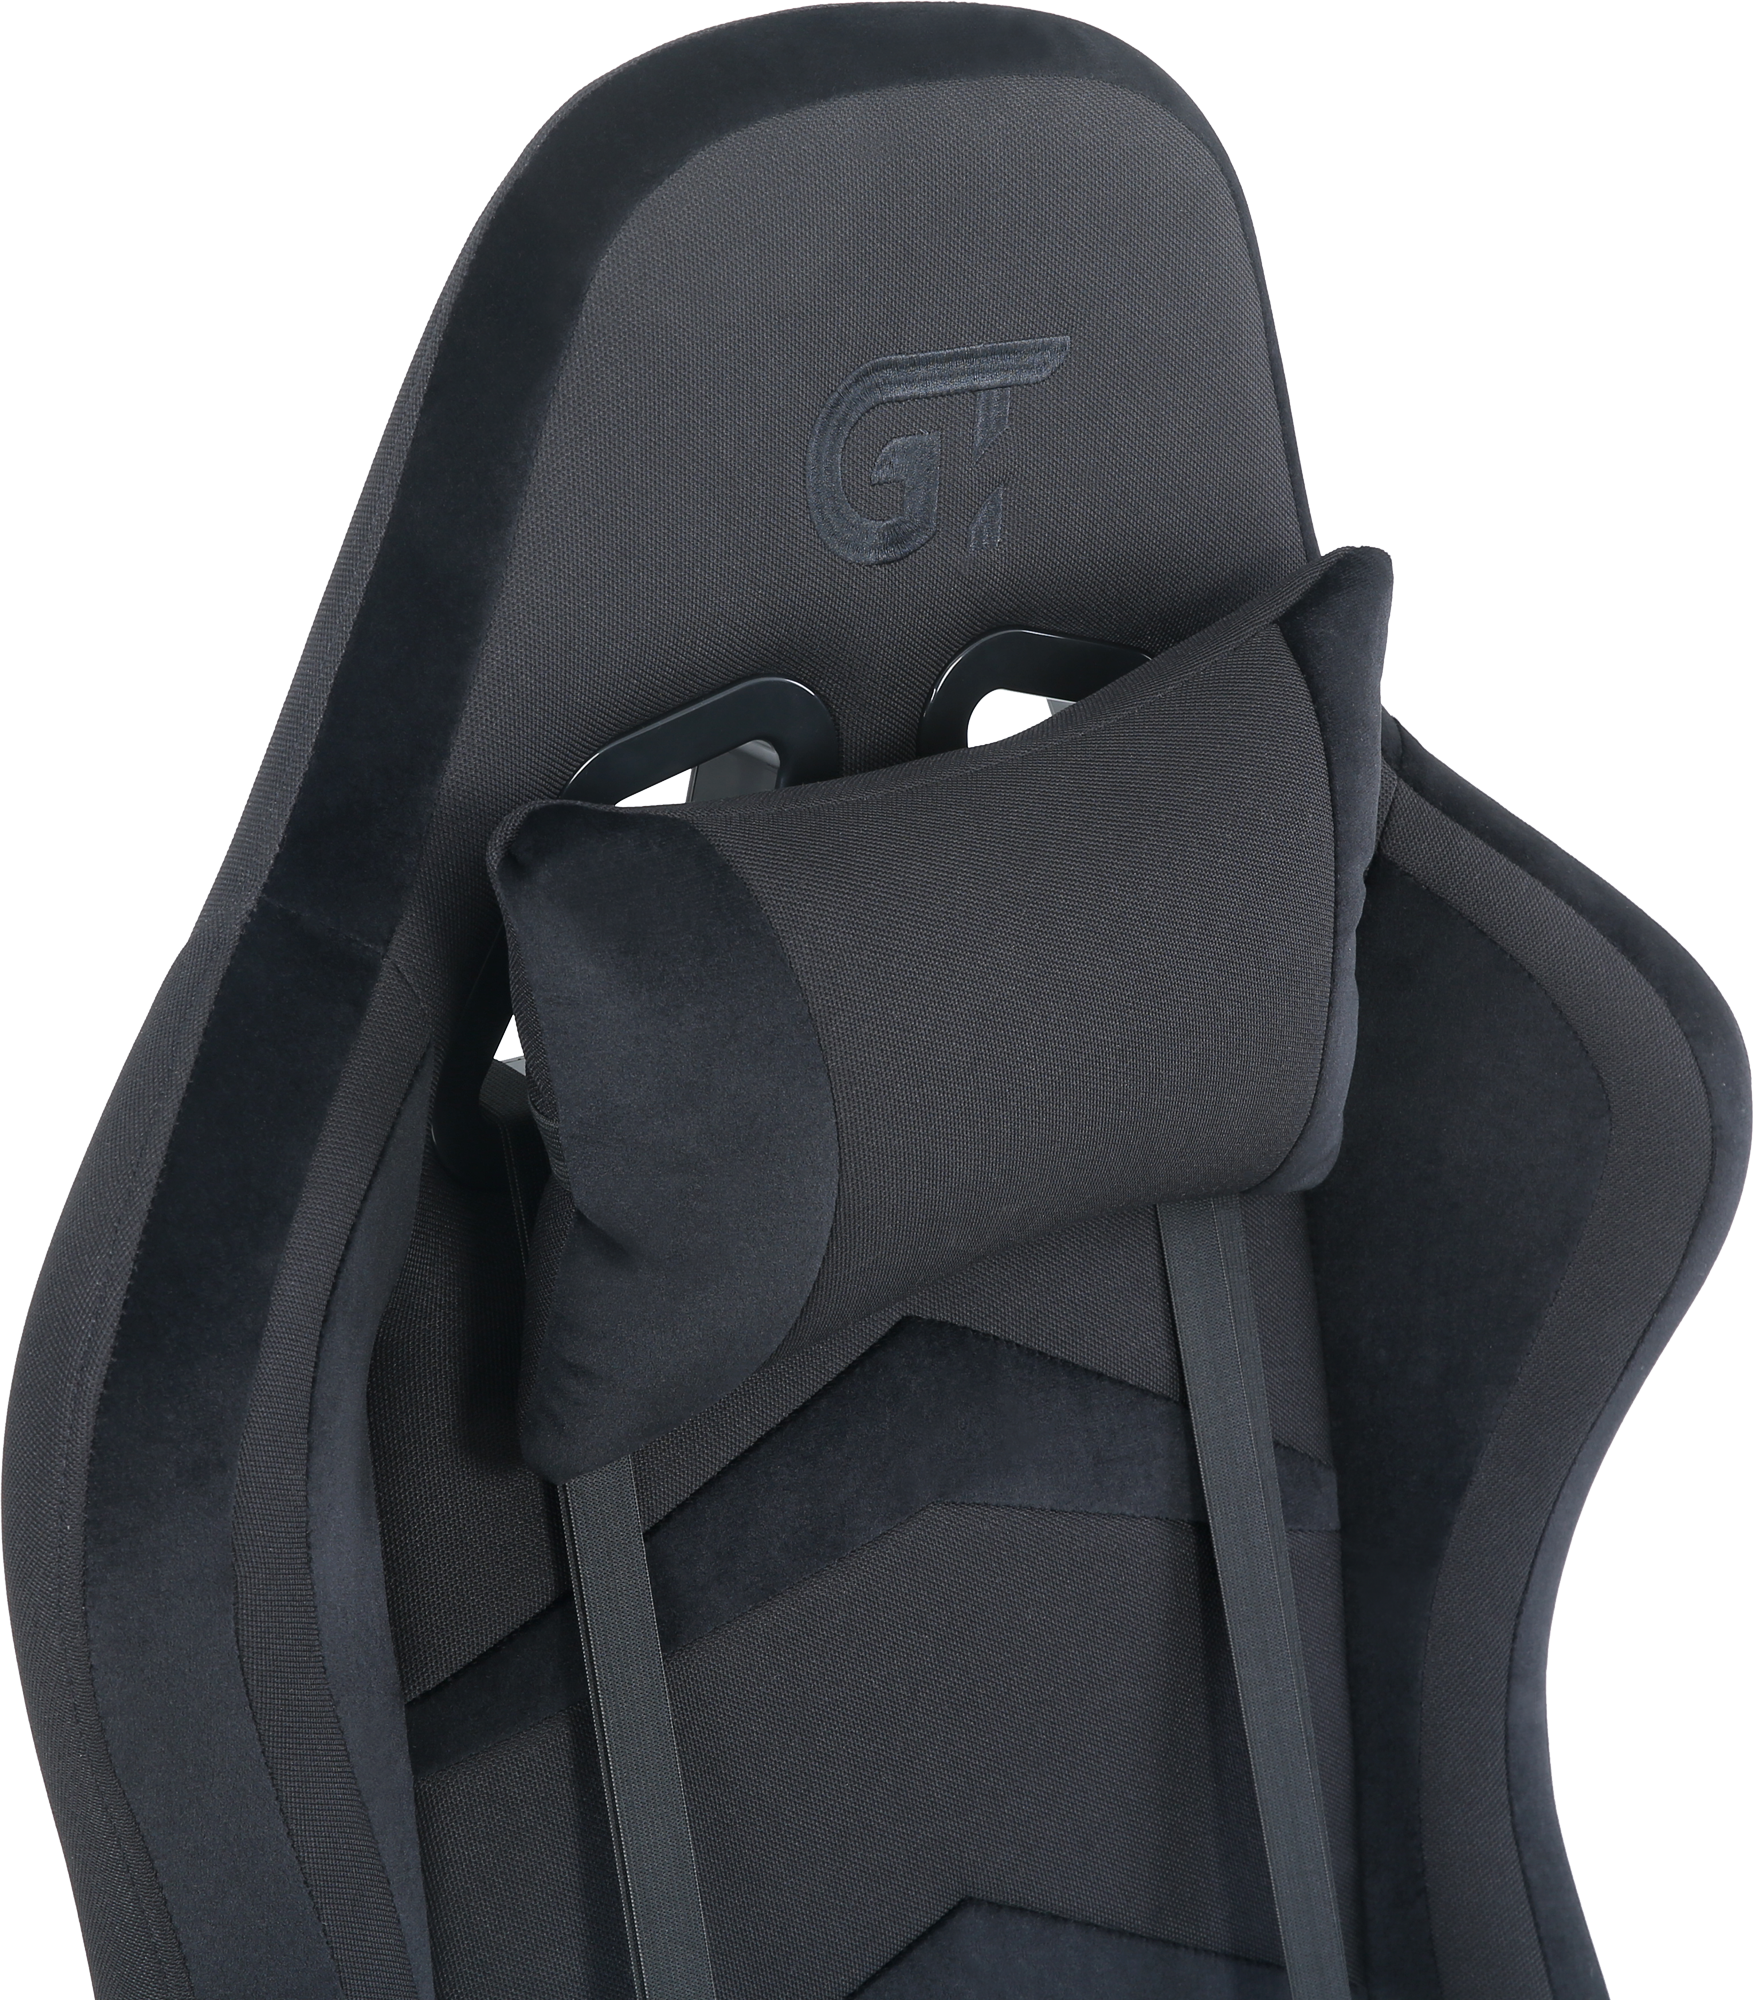 Геймерское кресло GT Racer черное (X-2534-F Fabric Black) - фото 8